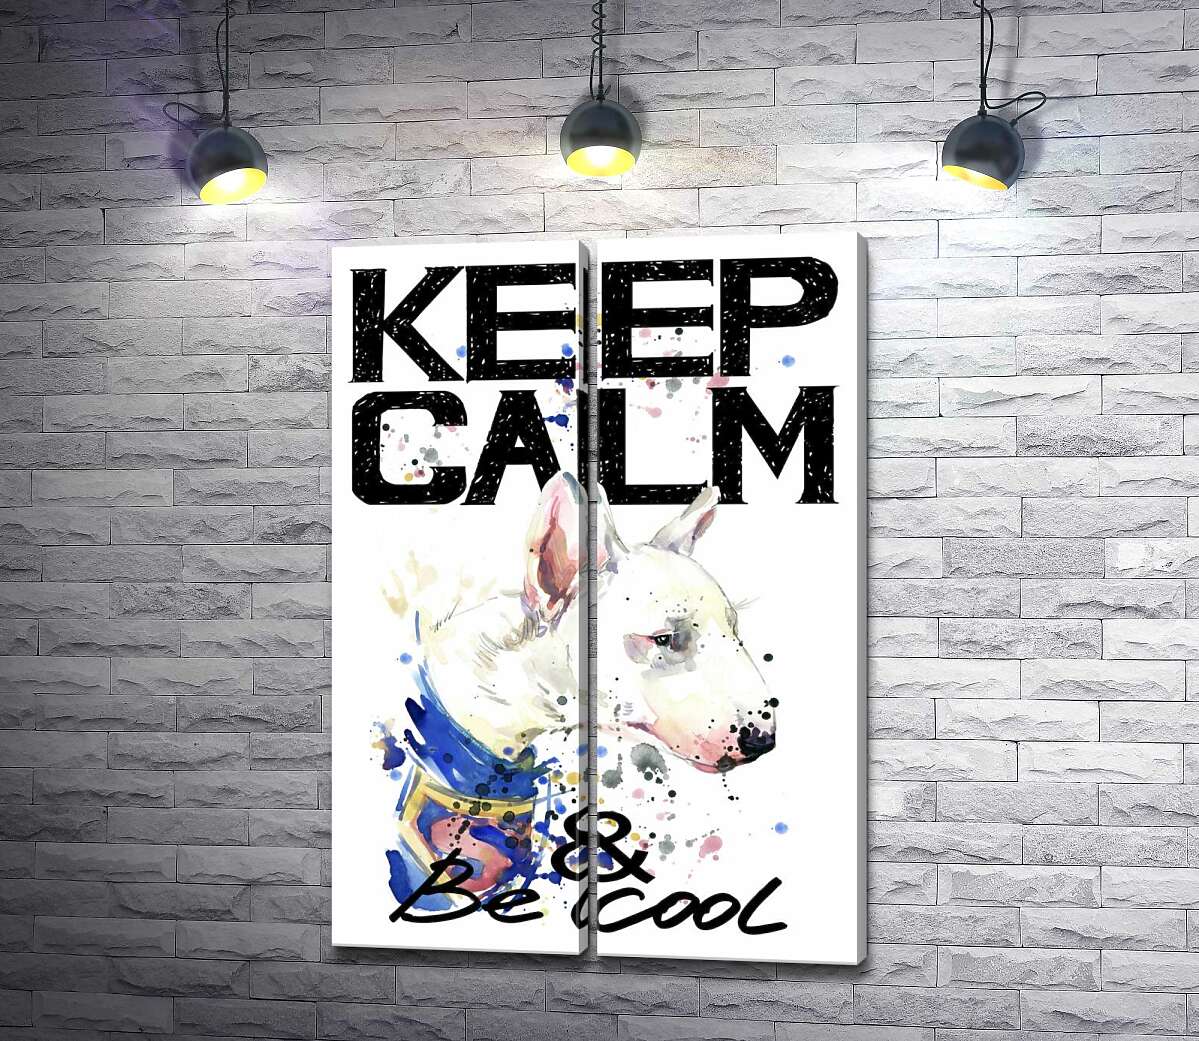 модульная картина Профиль бультерьера среди надписи "keep calm and be cool"